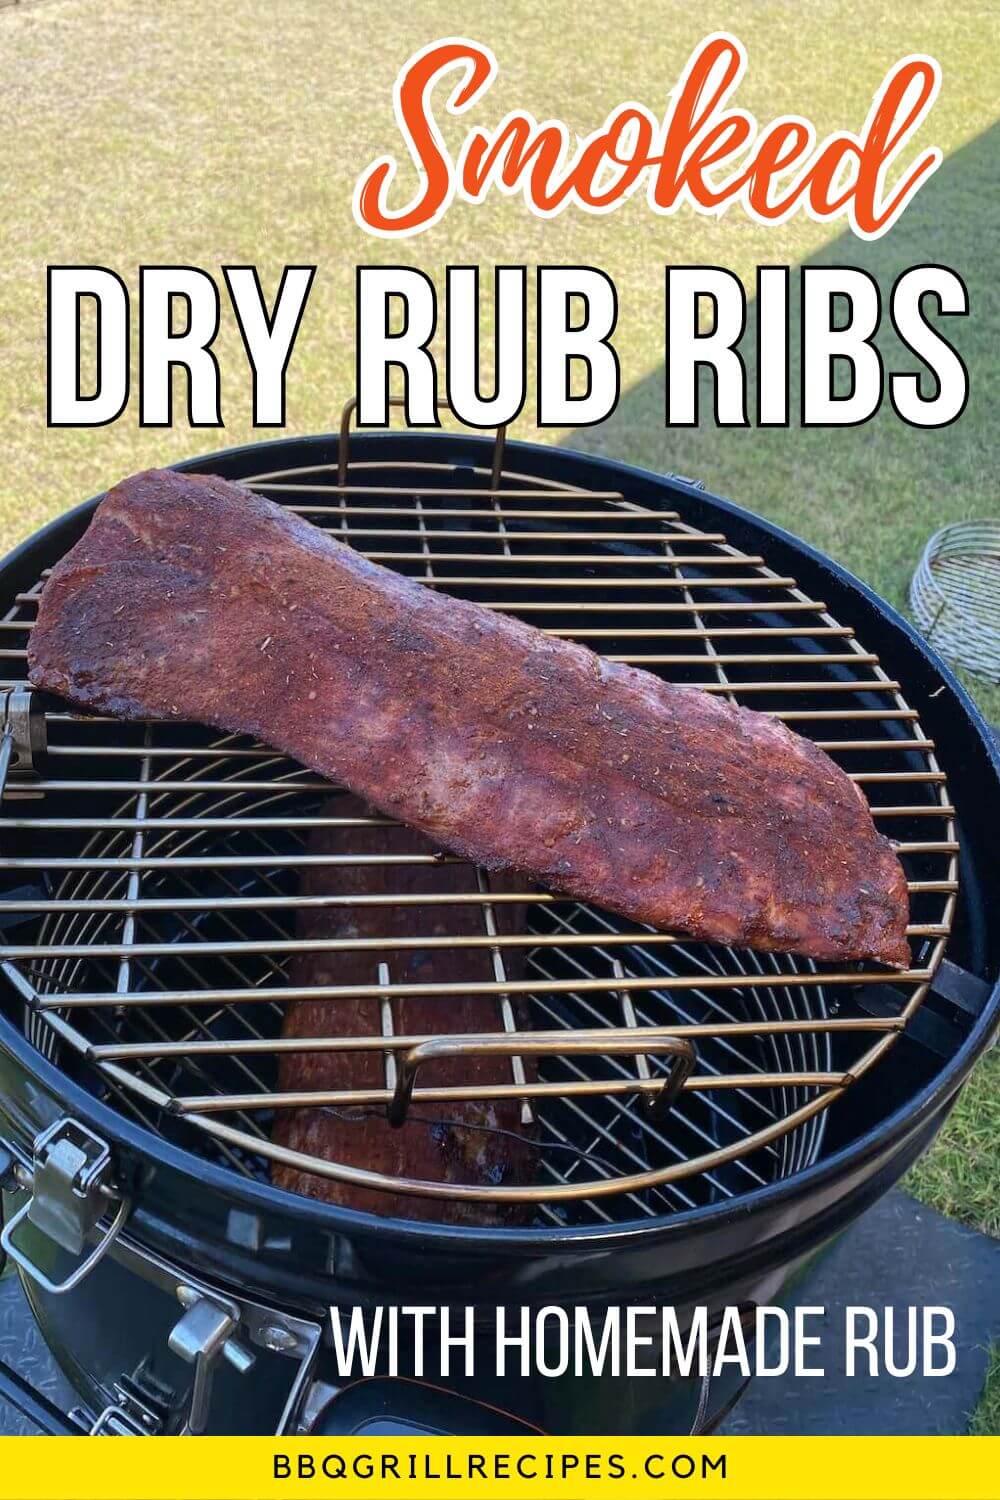 smoked dry rub ribs with homemade rub - mustard dry rub ribs